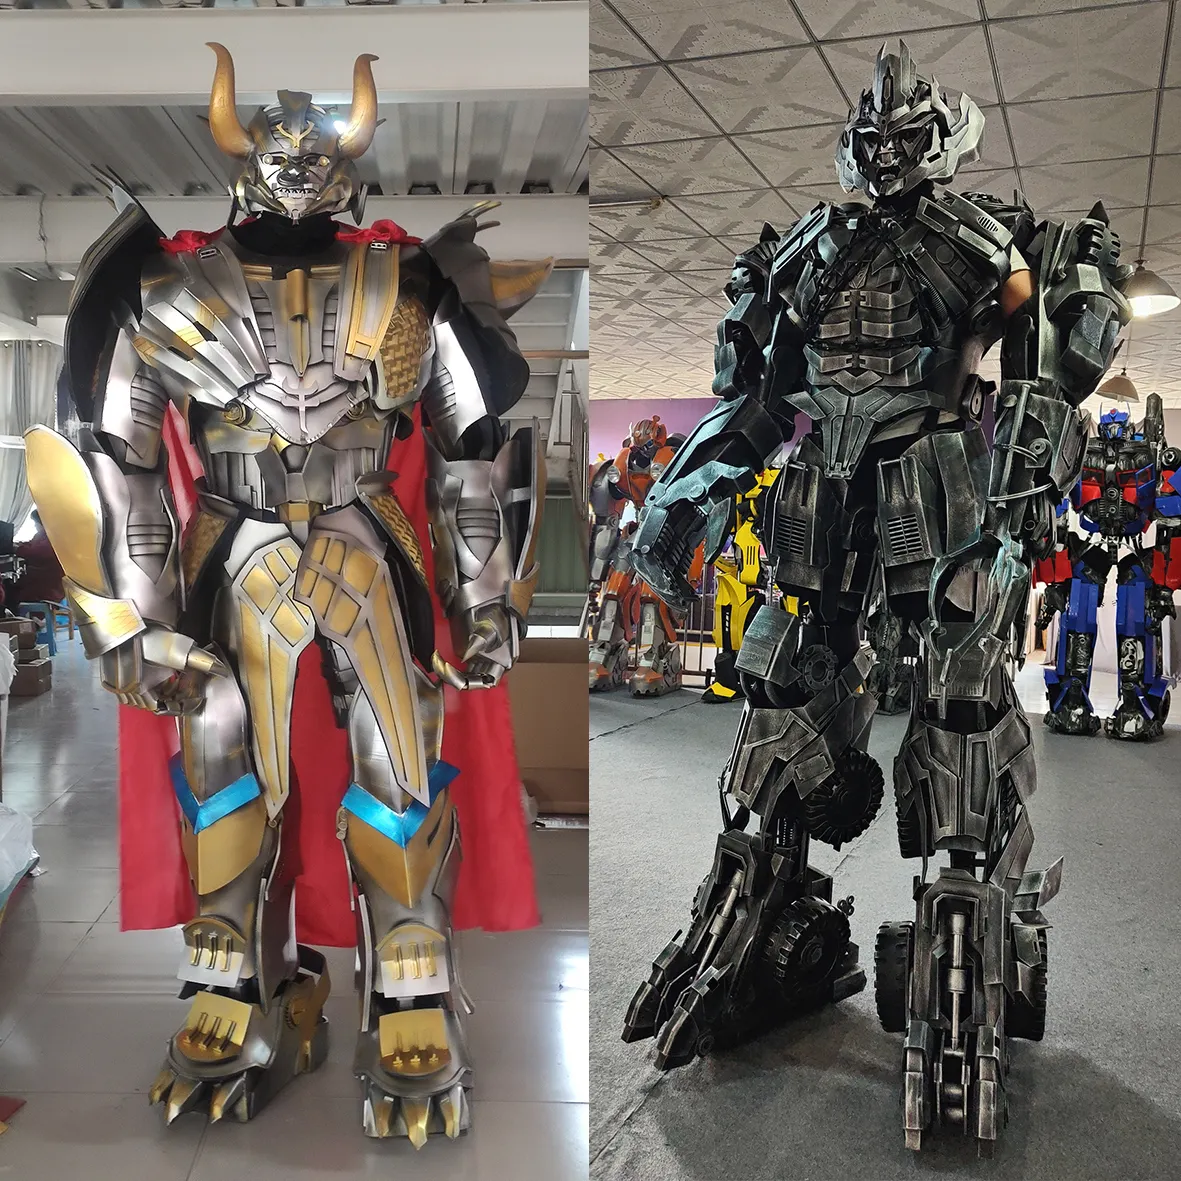 China Großhandel tragbares Led-Lichtroboter-Mascottenkostüm 2,7 M große Lebensgröße Roboterkostüm für Erwachsene zu verkaufen Aktivitätsparty